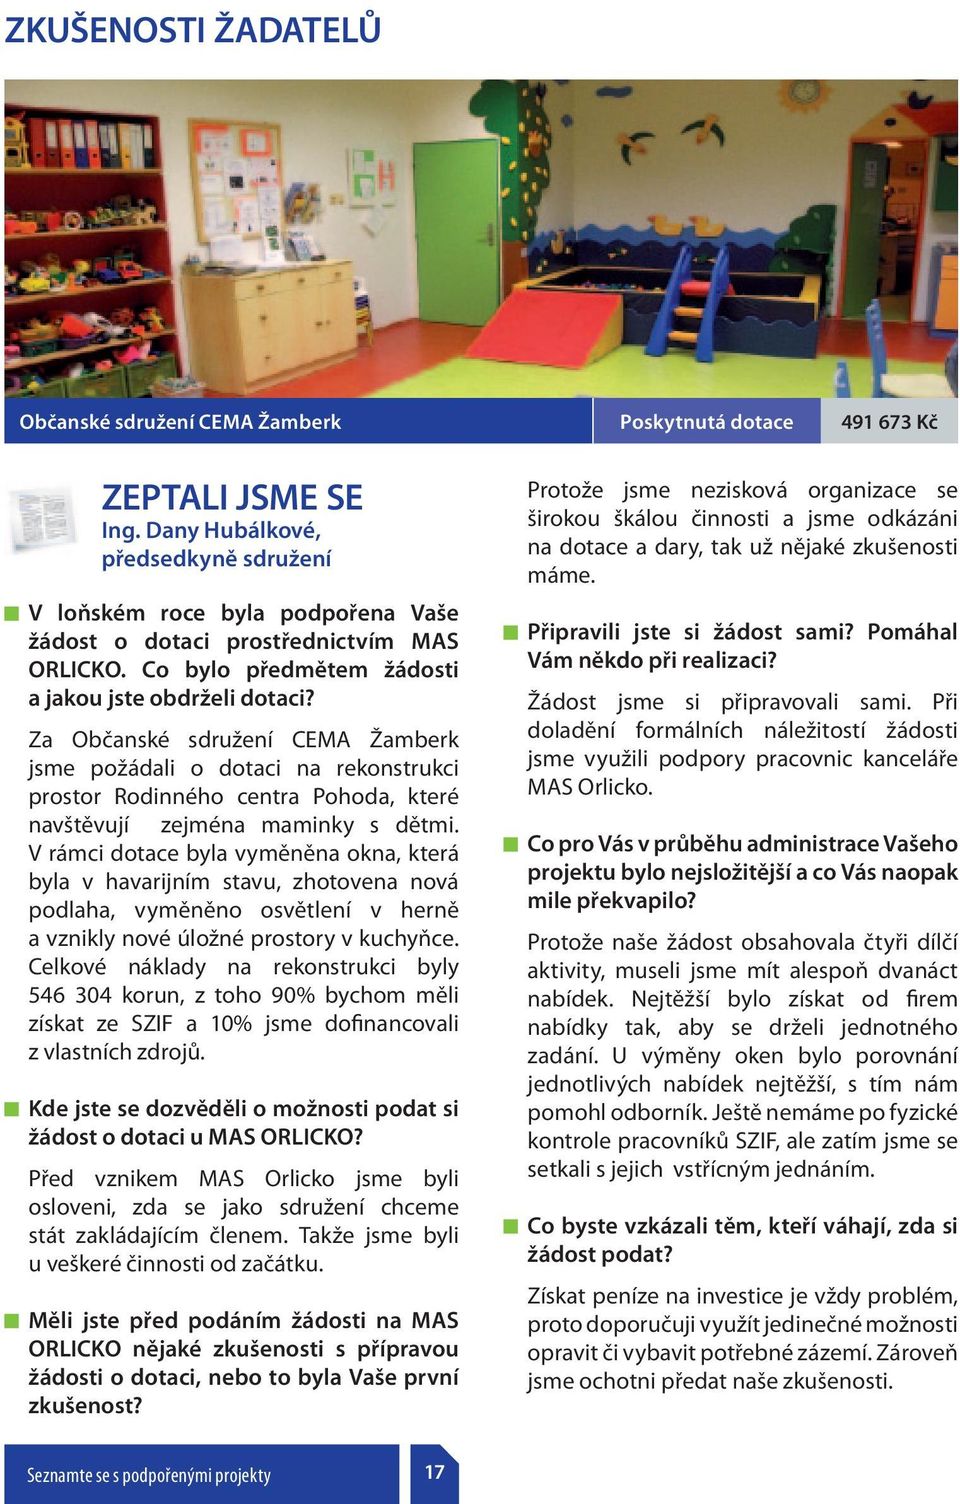 Za Občanské sdružení CEMA Žamberk jsme požádali o dotaci na rekonstrukci prostor Rodinného centra Pohoda, které navštěvují zejména maminky s dětmi.